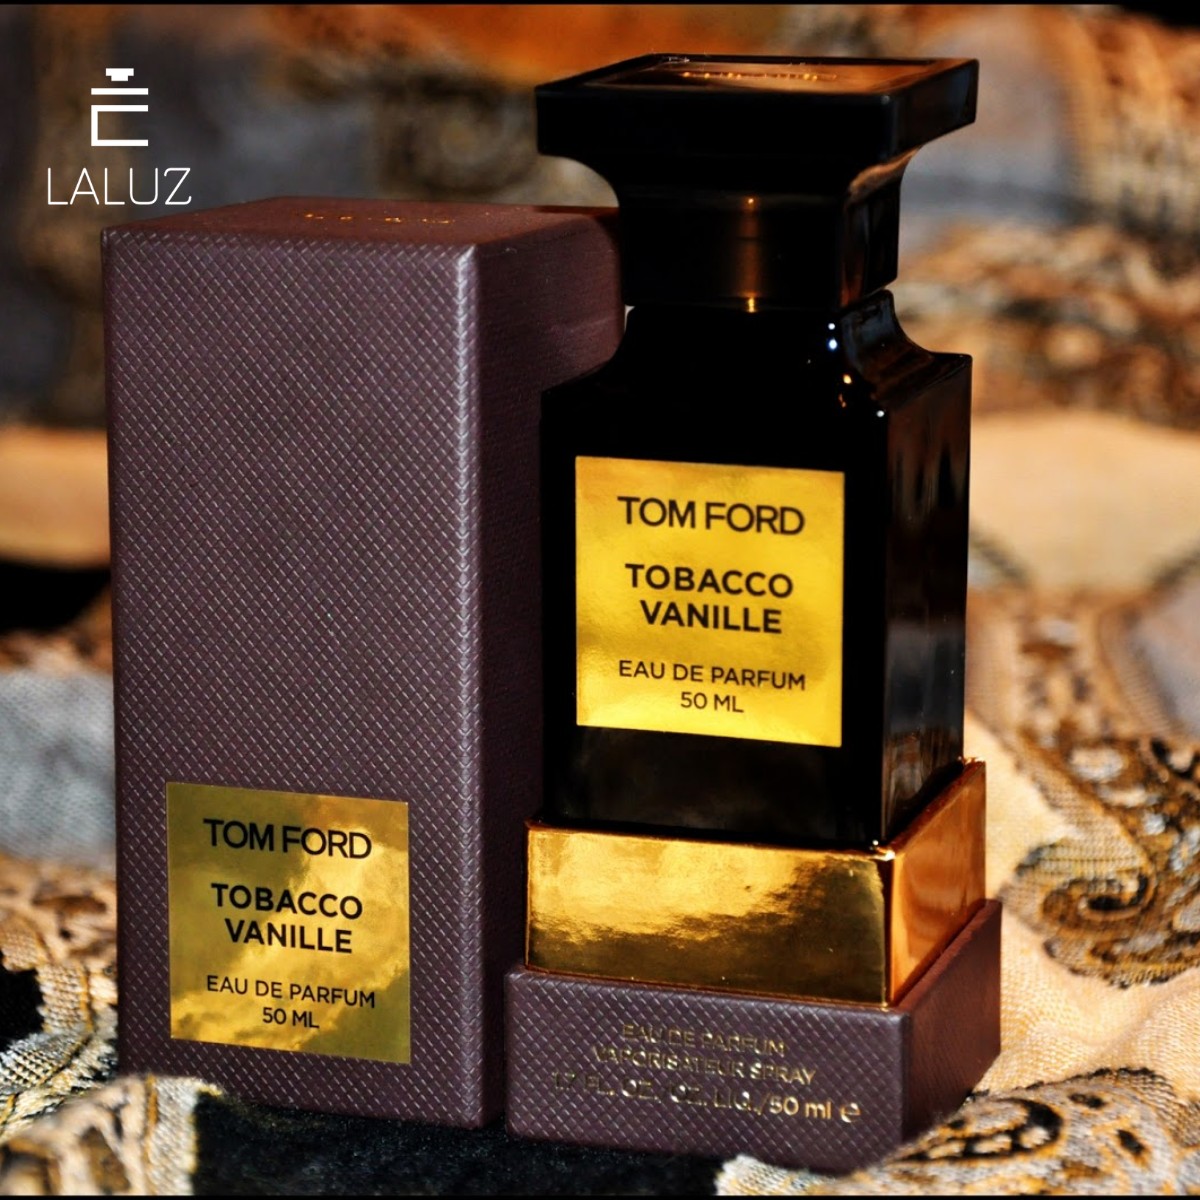 Nước hoa Tom Ford Tobacco Vanille có mùi hương nồng nàn, gợi cảm giác huyền bí và sang trọng